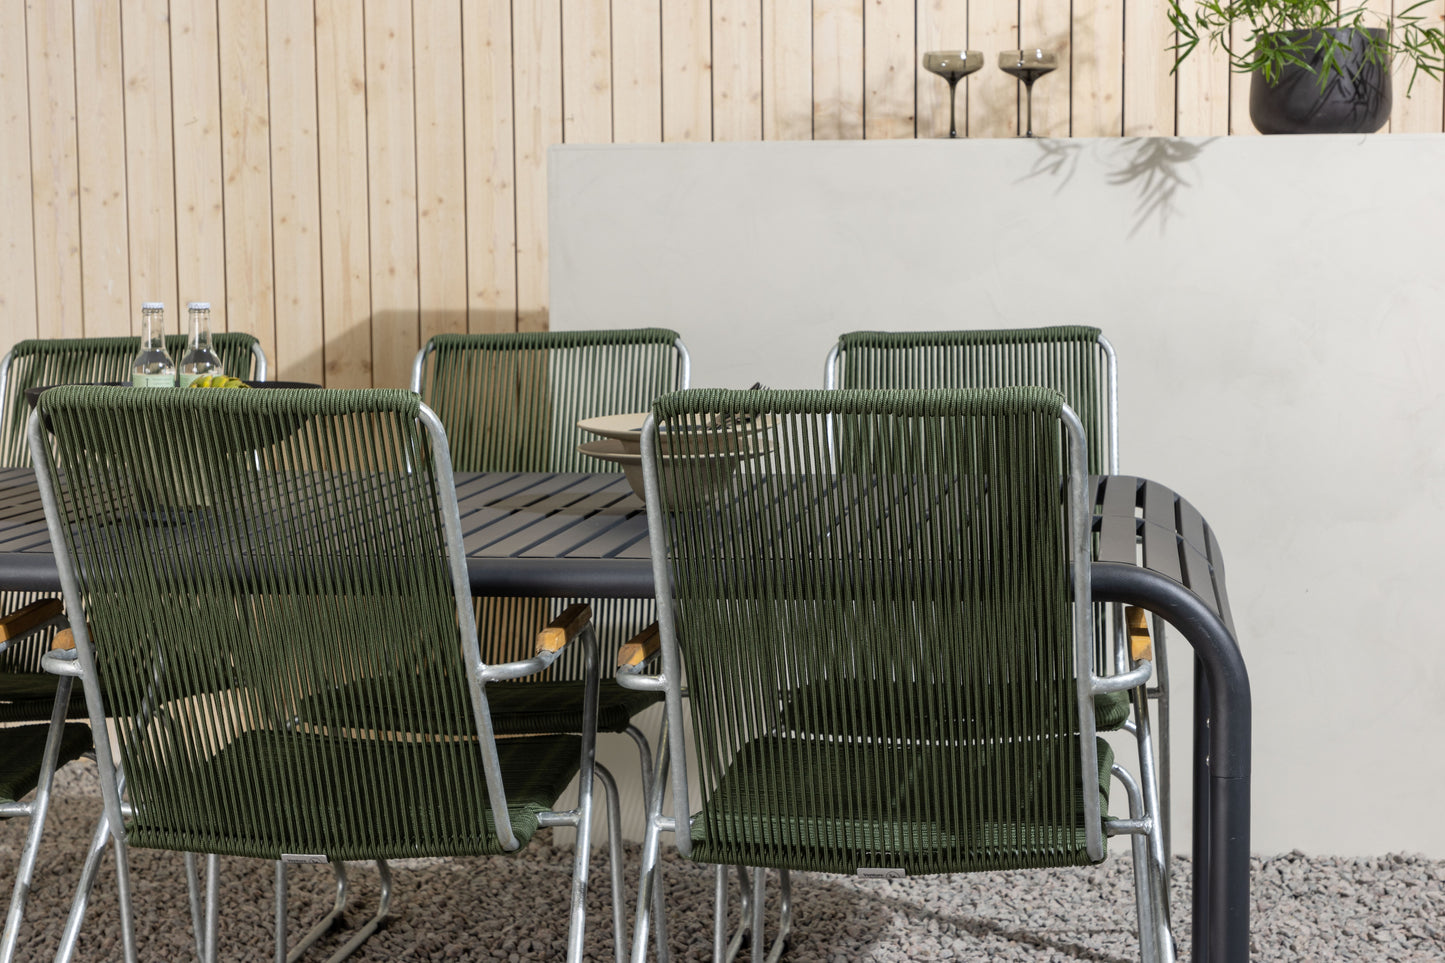 Borneo - Spisebord, Aluminium - Sort / Rektangulær 100*200* + Bois stol Stål - Sølv / Grøn Reb